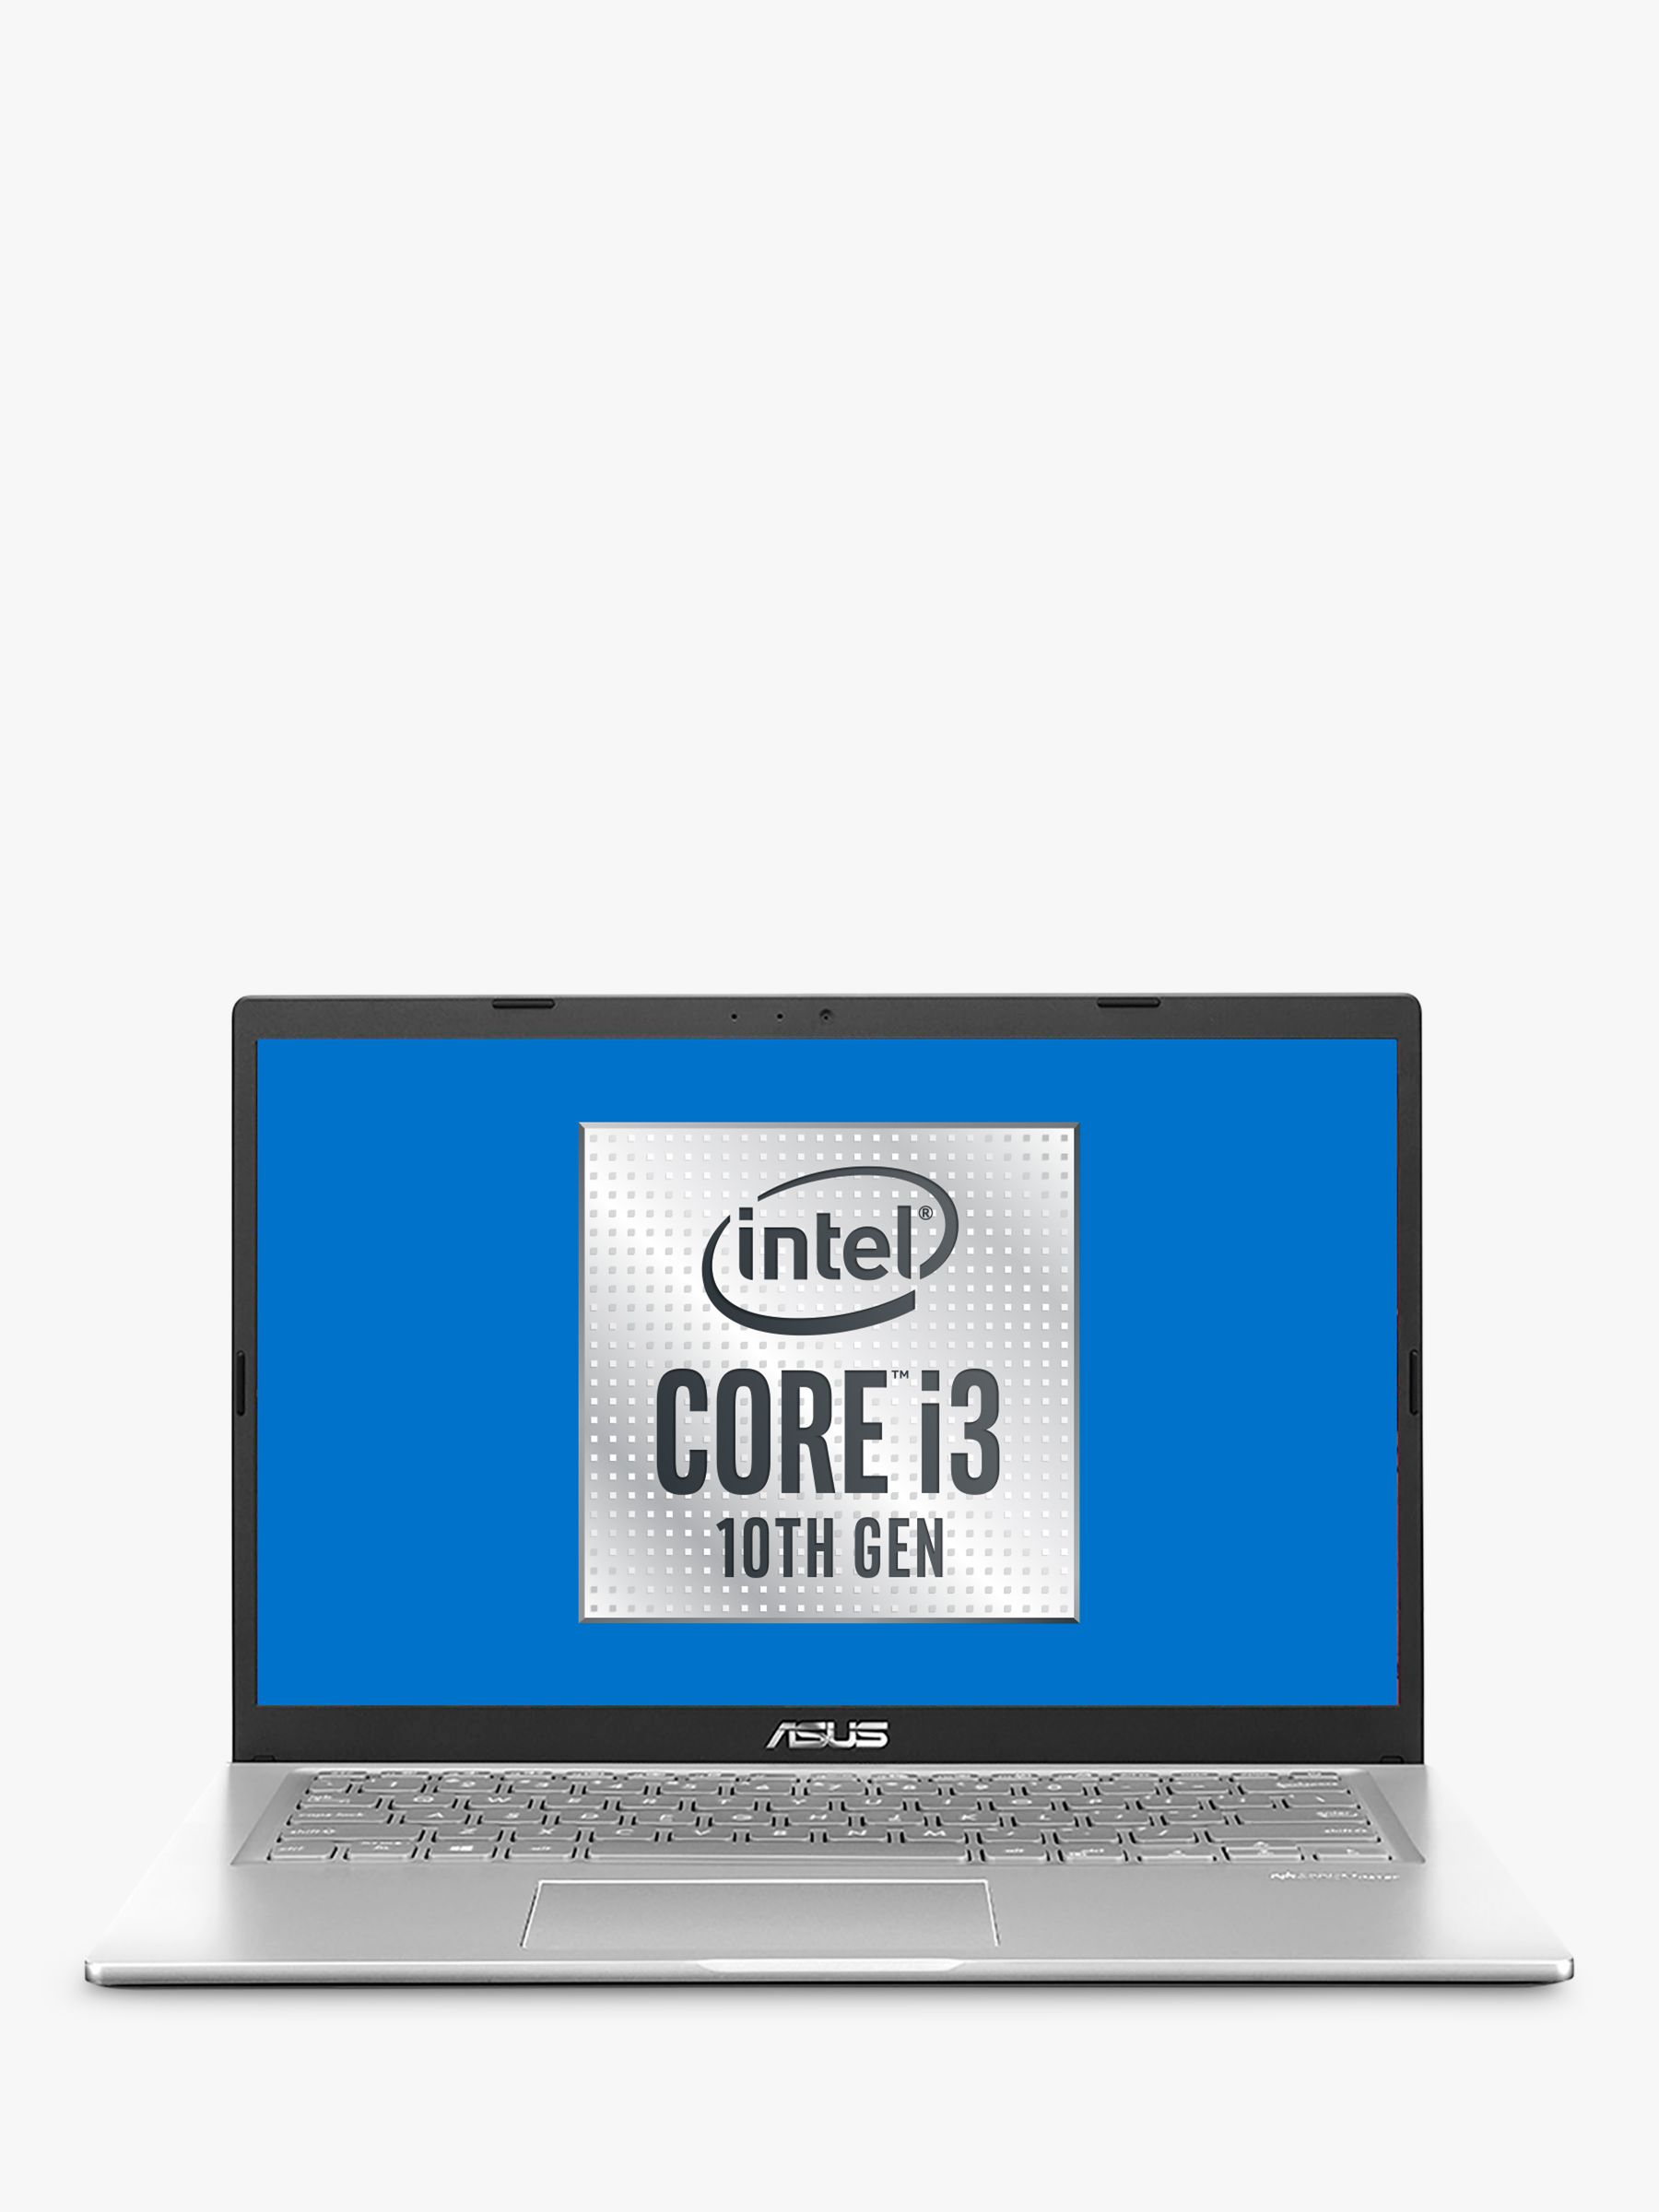 Asus X415ja Ek056t Laptop Intel Core I3 Processor 4gb Ram 128gb Ssd